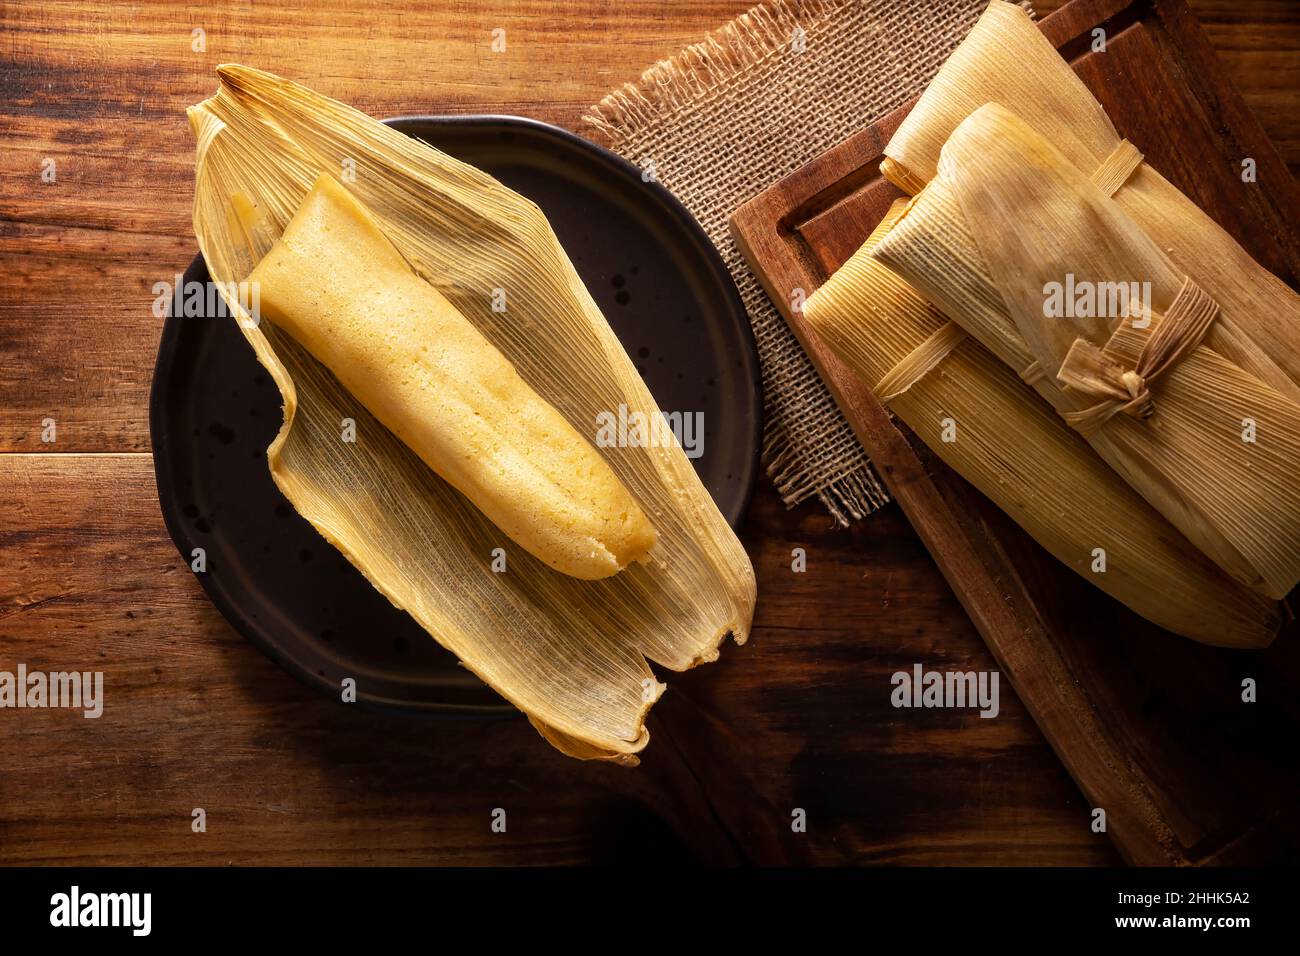 Plat préhispanique typique du Mexique et de certains pays d'Amérique latine.Pâte de maïs enveloppée de feuilles de maïs.Les tamales sont cuits à la vapeur. Banque D'Images